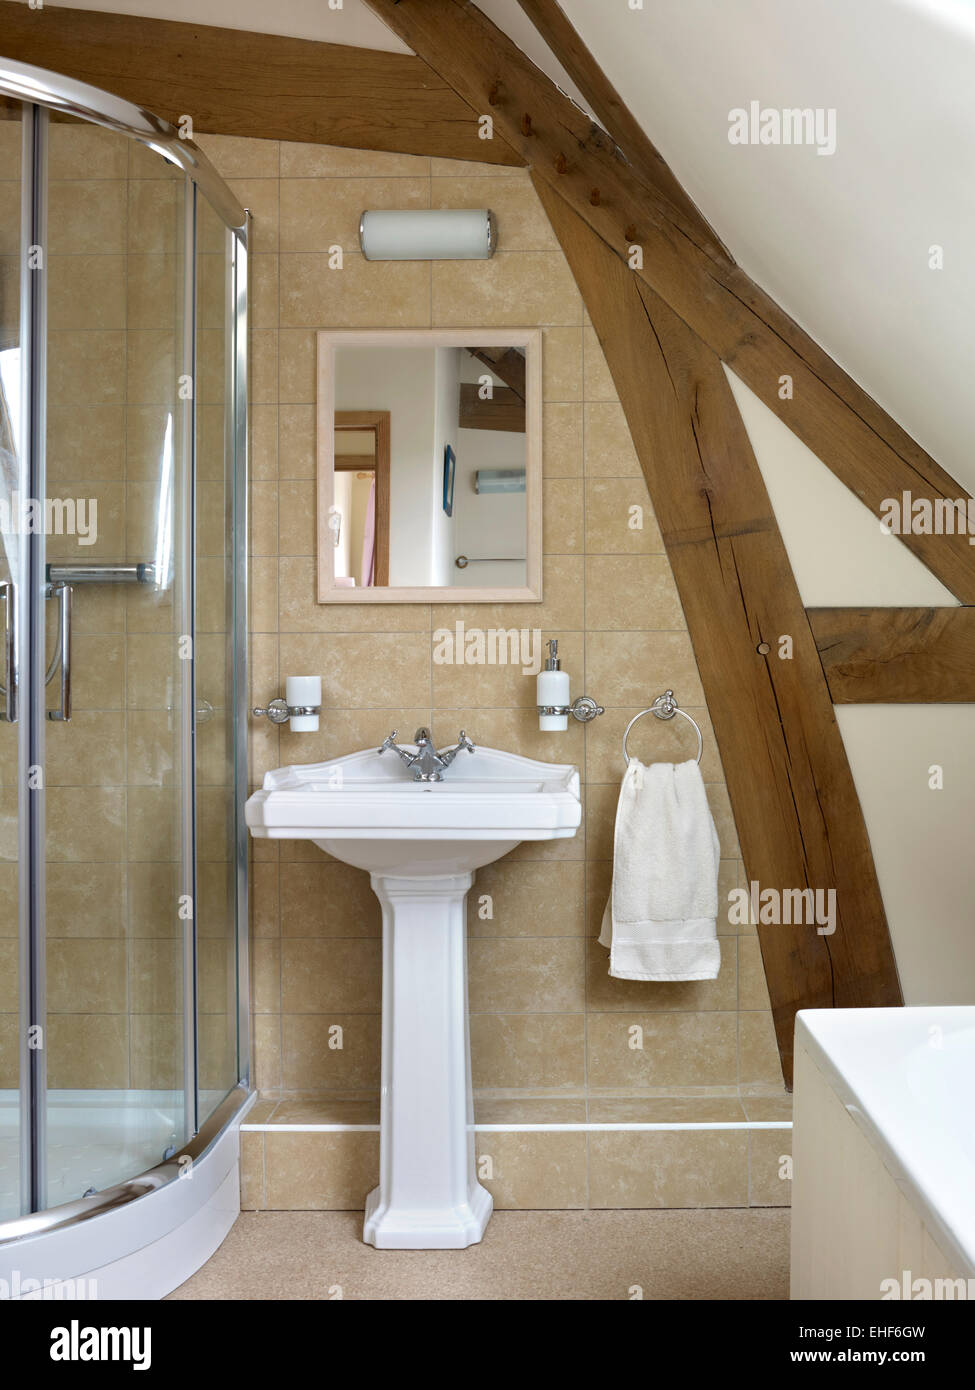 Holzbalken Bad mit Dusche, Waschbecken und Spiegel in Moon Farm nach Hause,  UK Stockfotografie - Alamy